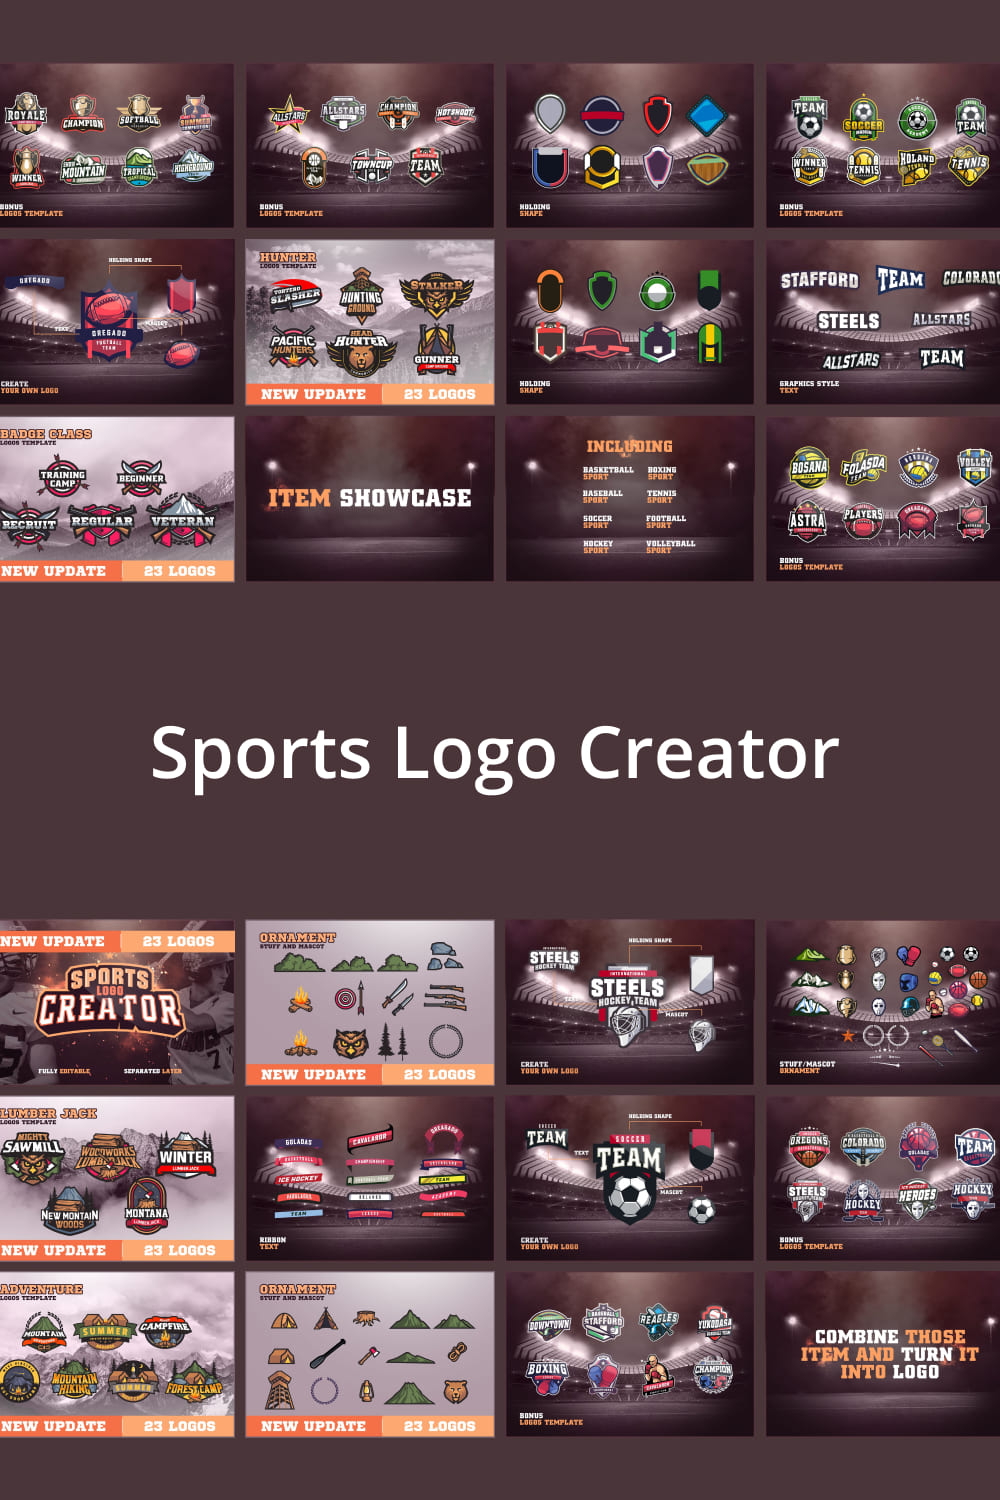 Basketball logo collection.